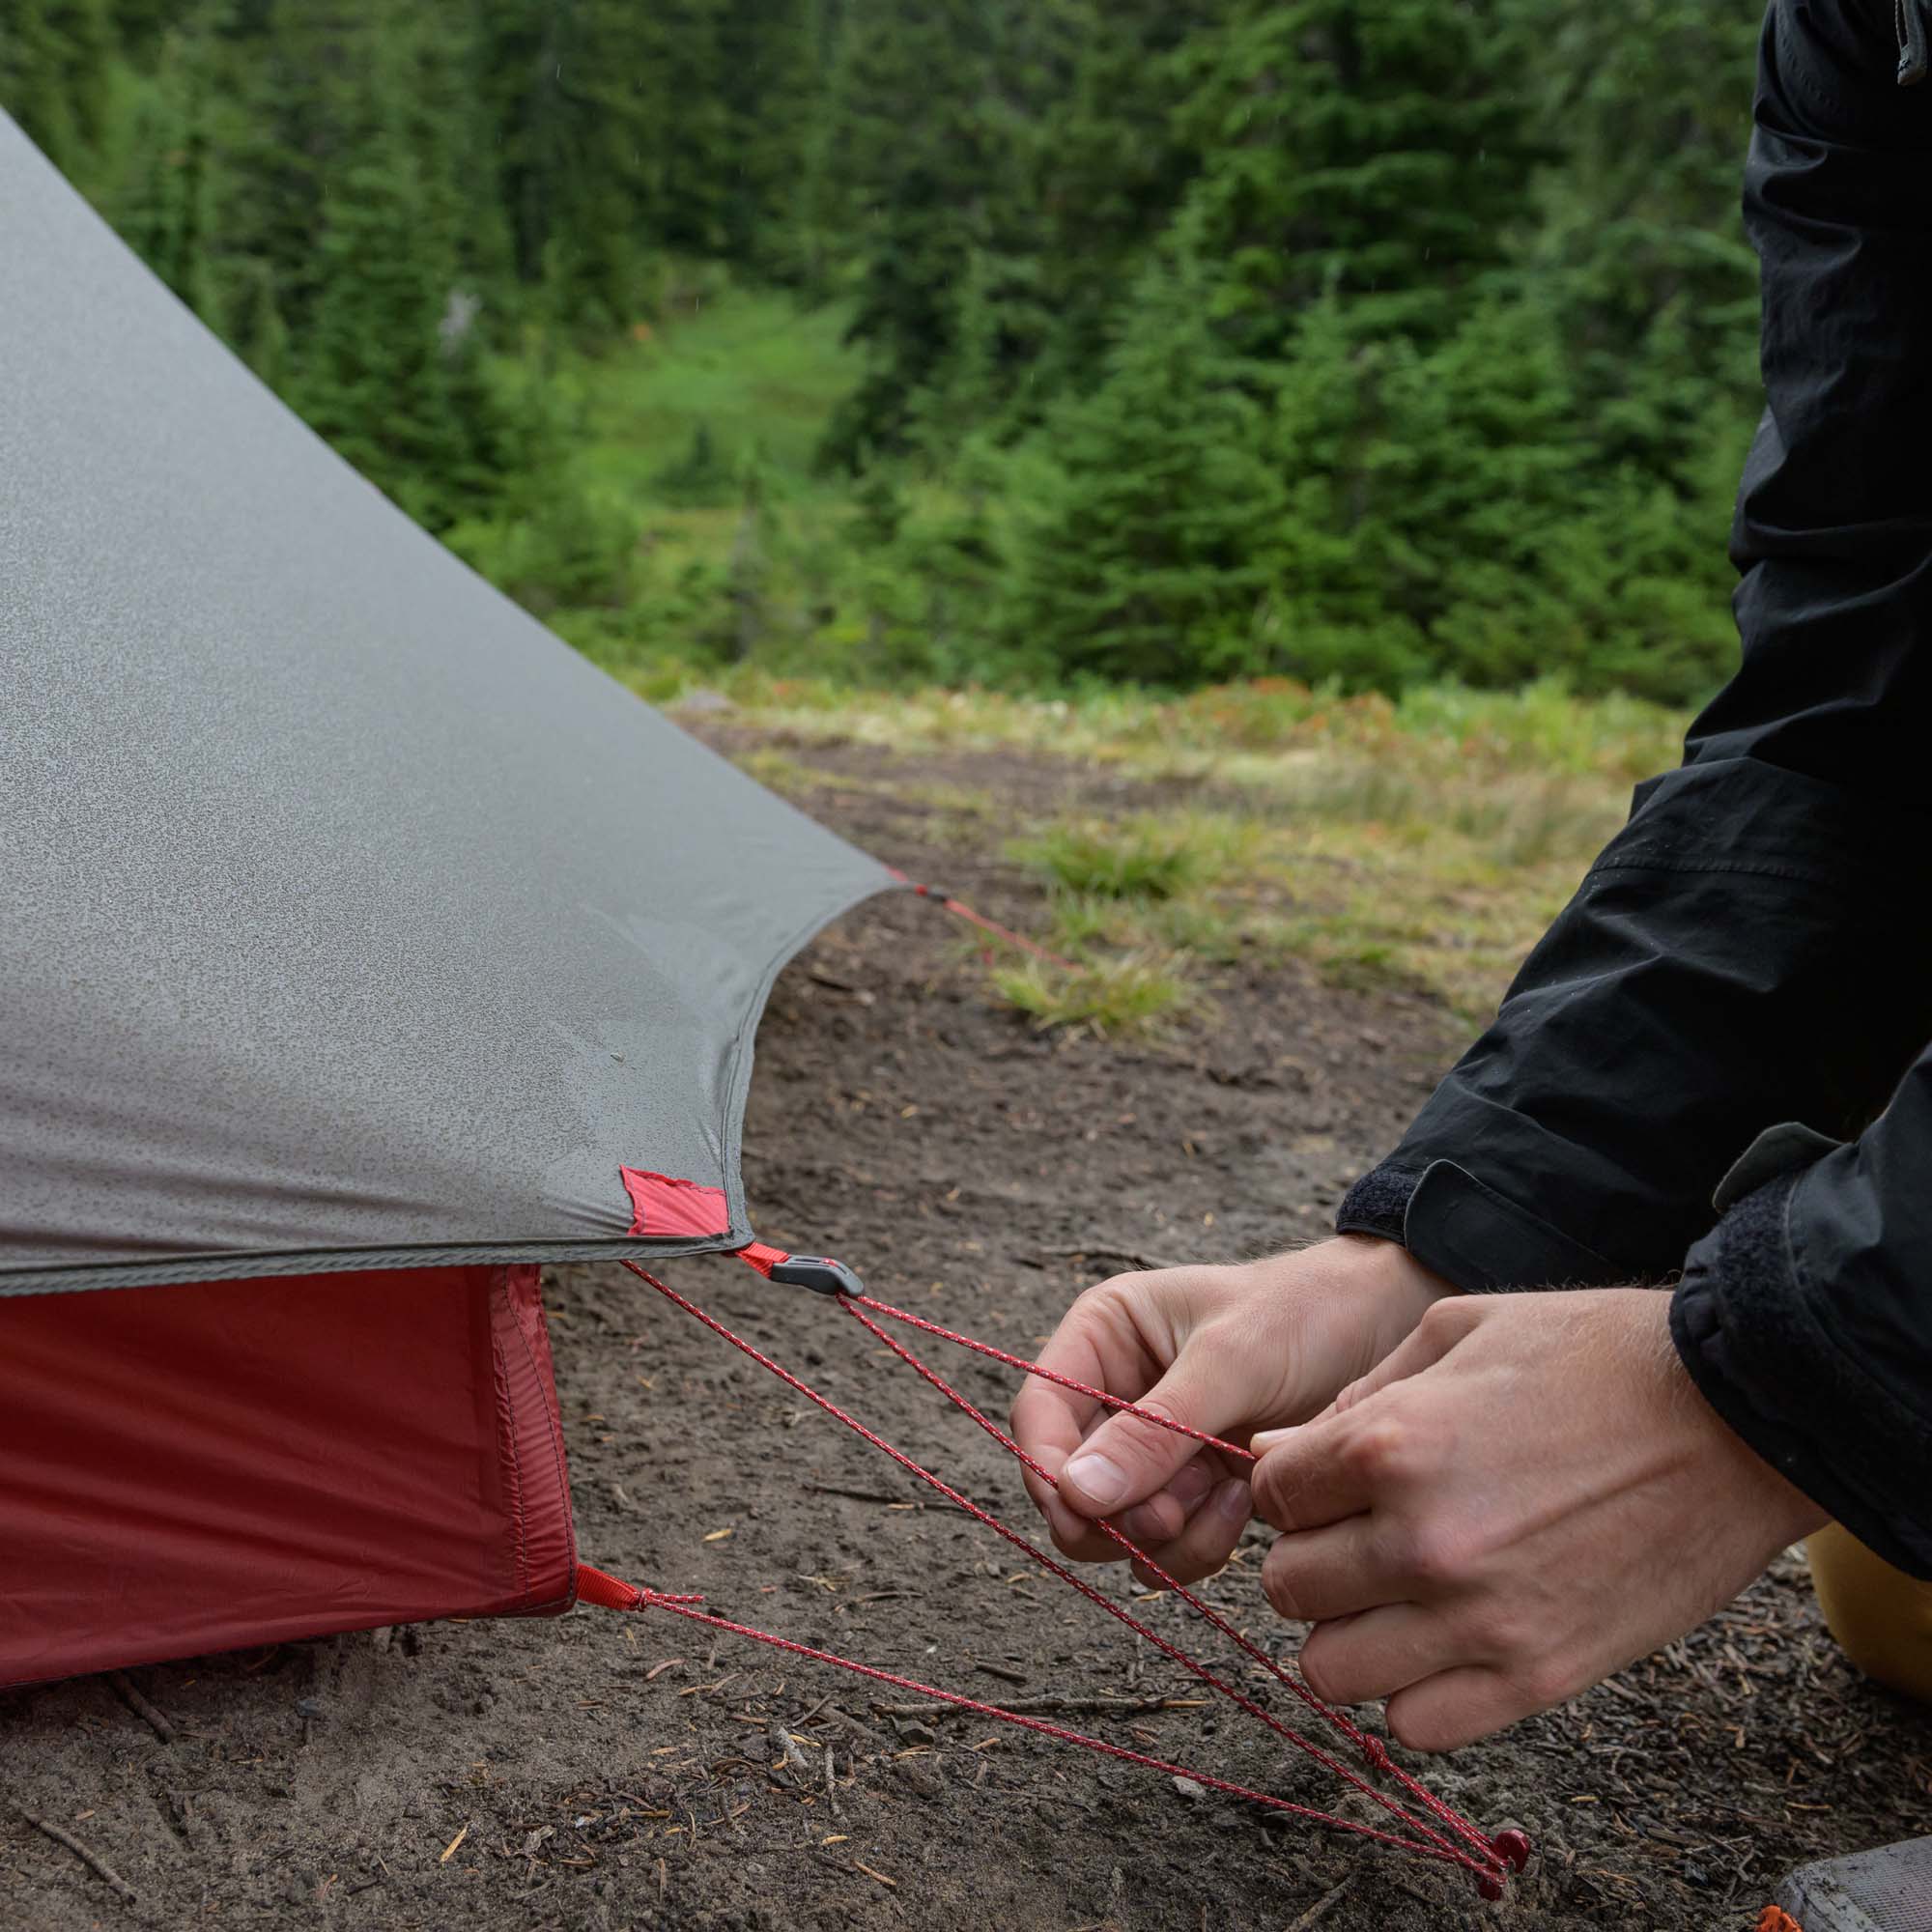 MSR FreeLite 2 V3 Ultralight Backpacking Tent 